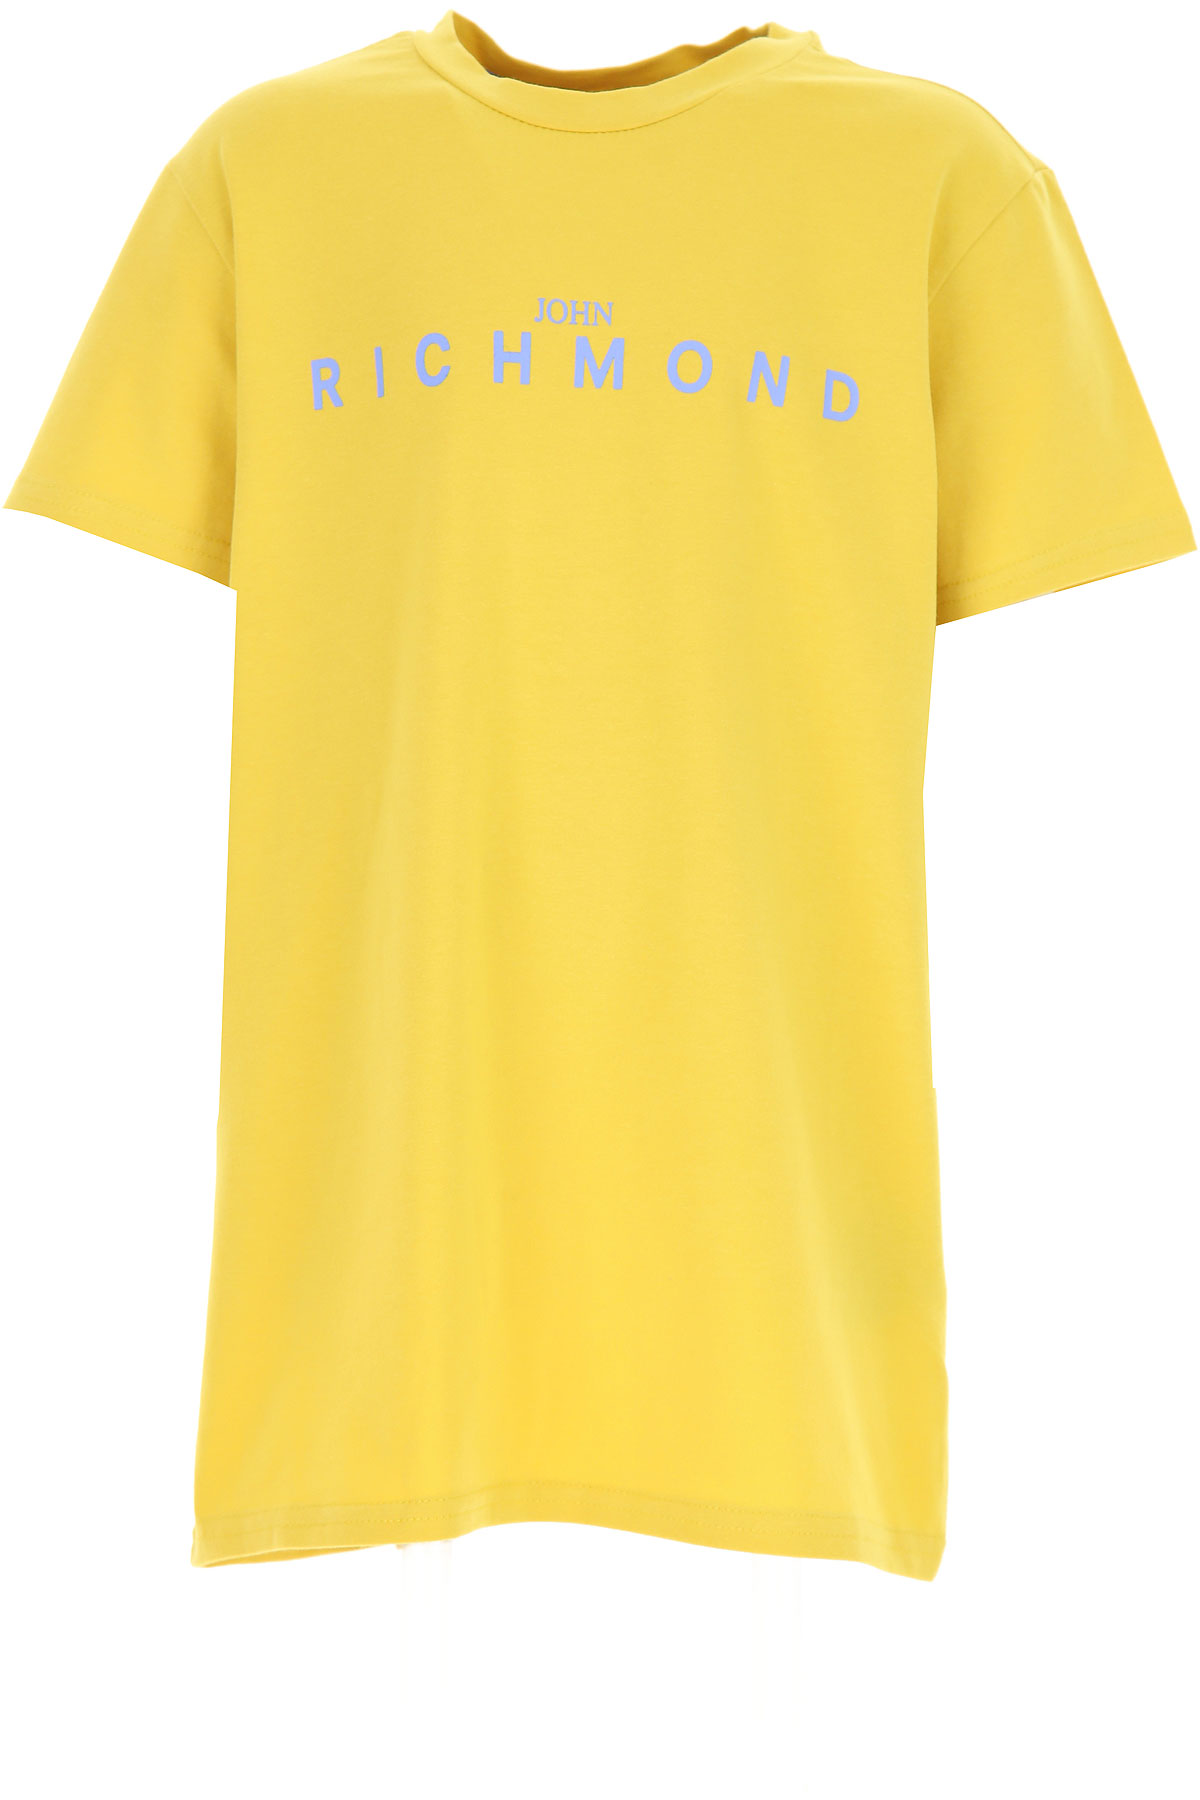 Richmond Kinder T-Shirt für Jungen Günstig im Sale, Bambus, Baumwolle, 2017, 10Y 12Y 14Y 16Y 4Y 6Y 8Y